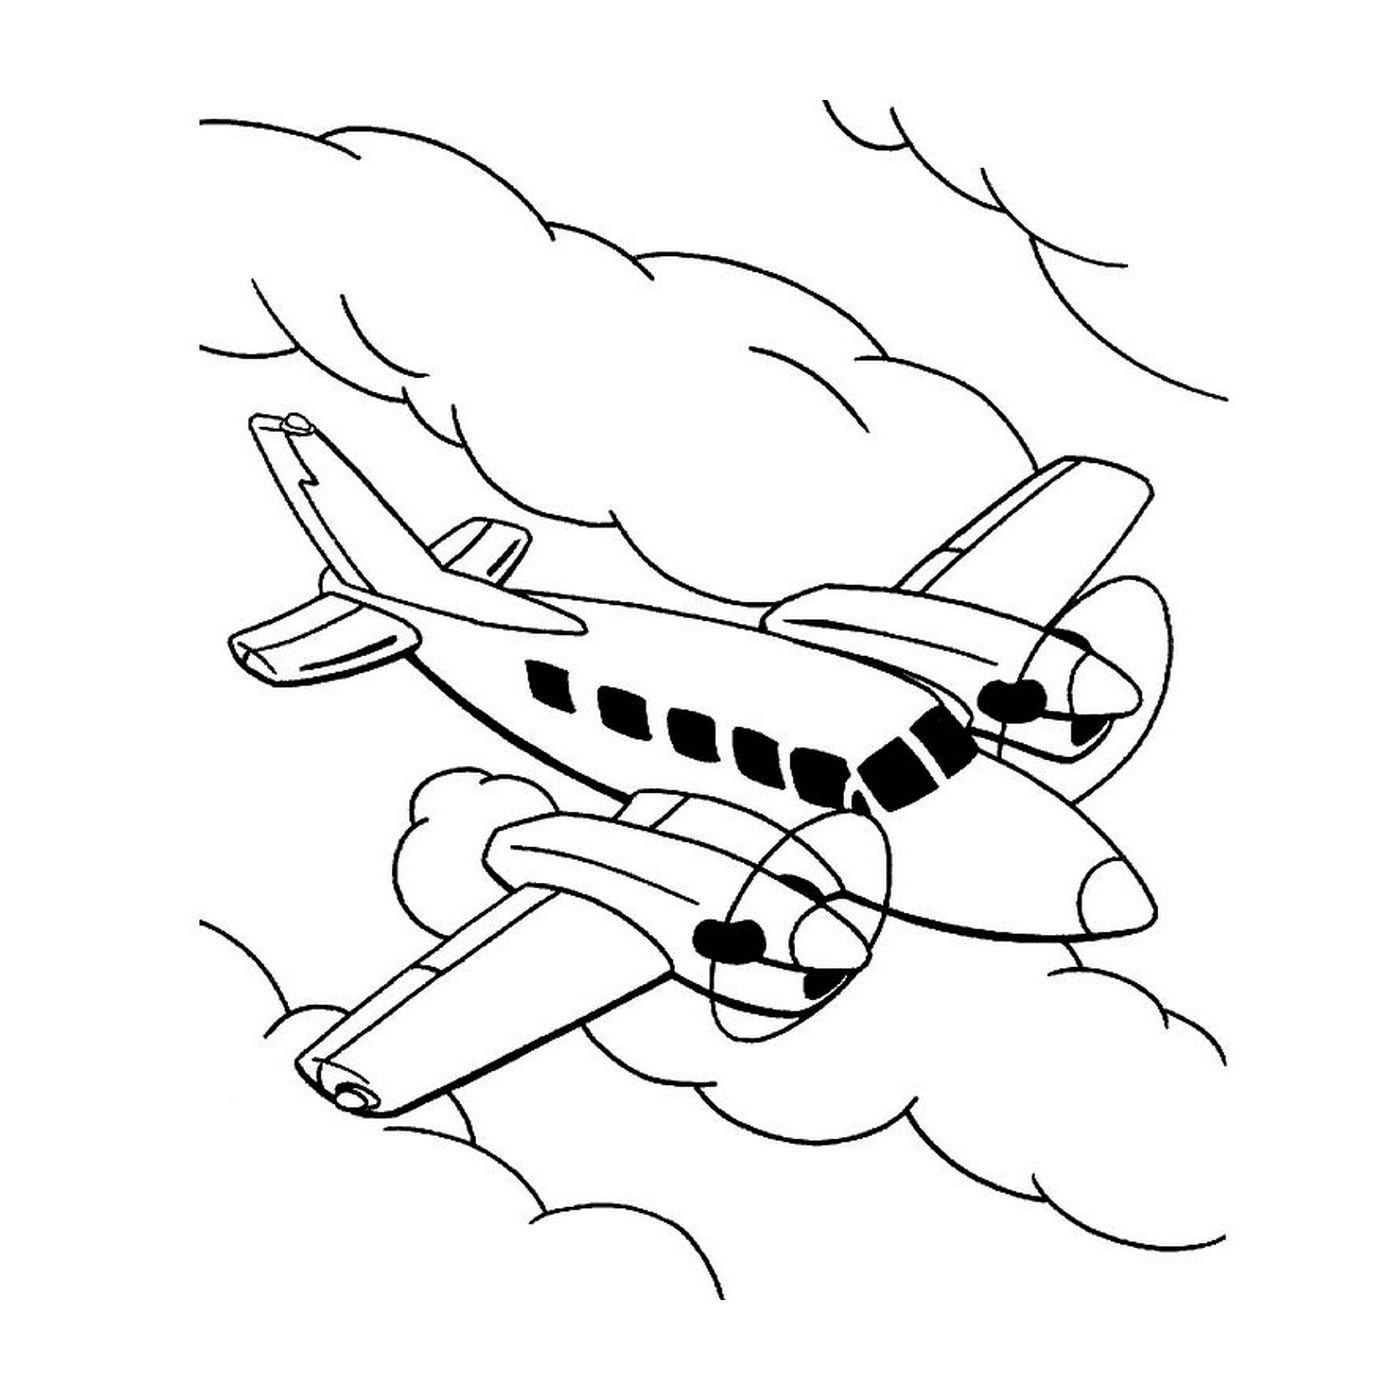  Un avión vuela en el cielo entre las nubes 